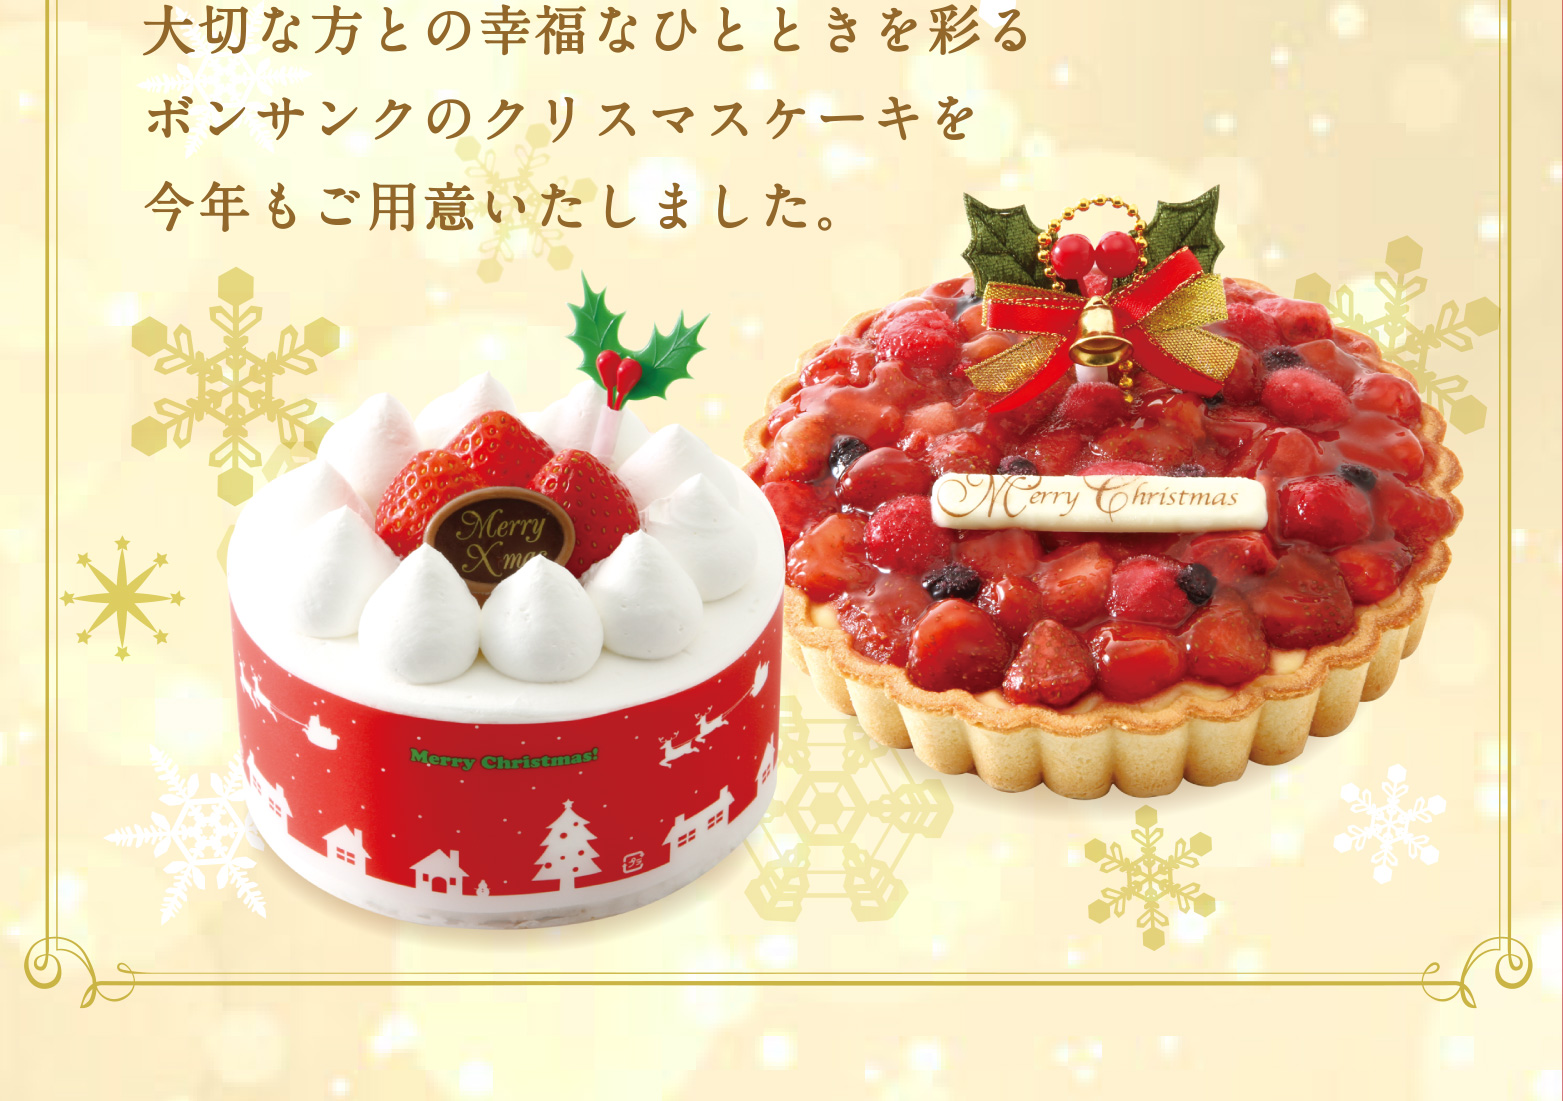 クリスマスケーキコレクション19 ボンサンク 福岡の石村萬盛堂